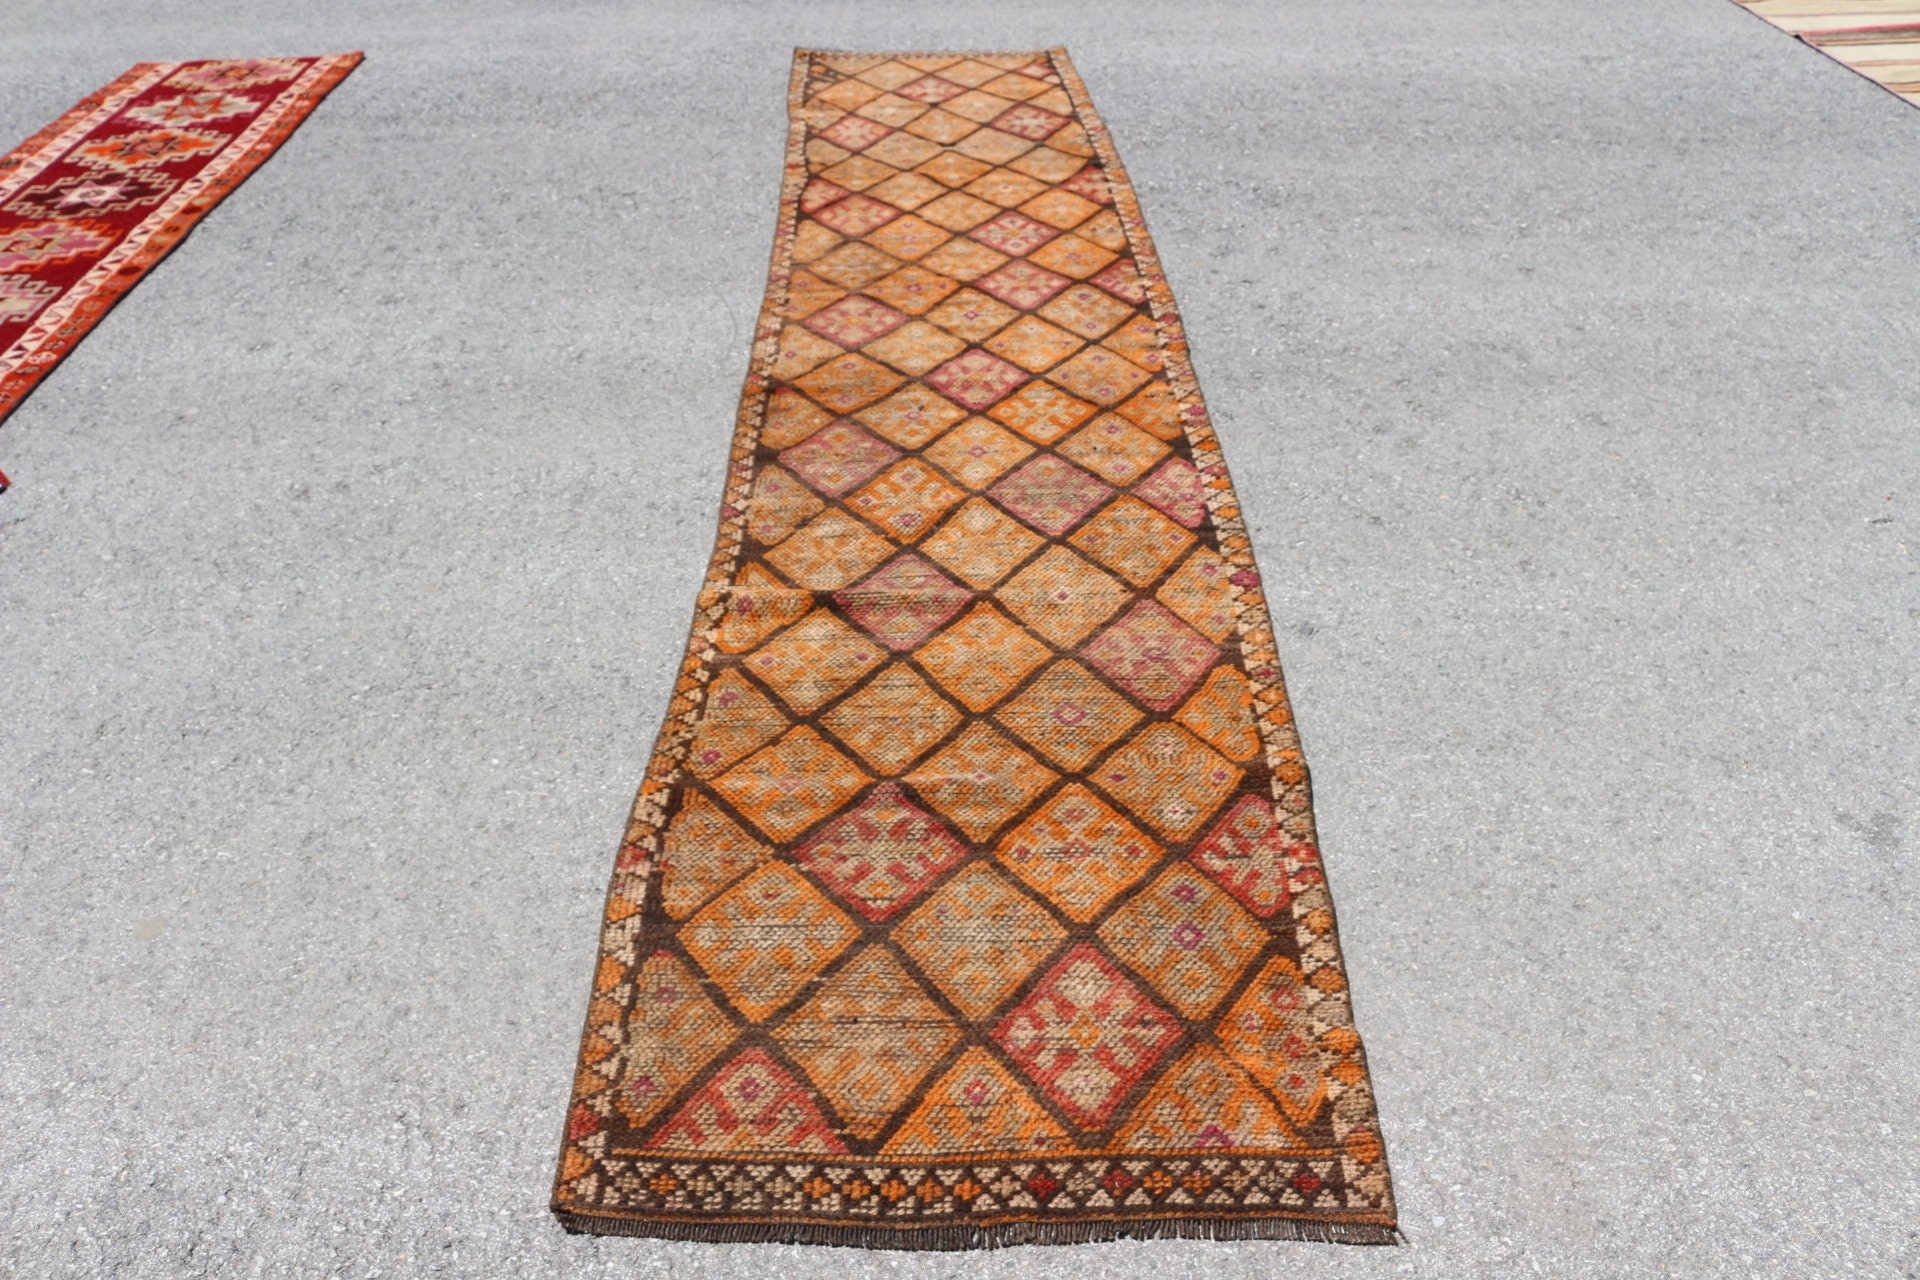 Oriental Rug, Vintage Rug, Oushak Rug, Brown  2.7x12.6 ft Runner Rug, Ethnic Rugs, Turkish Rugs, Kitchen Rugs, Corridor Rug